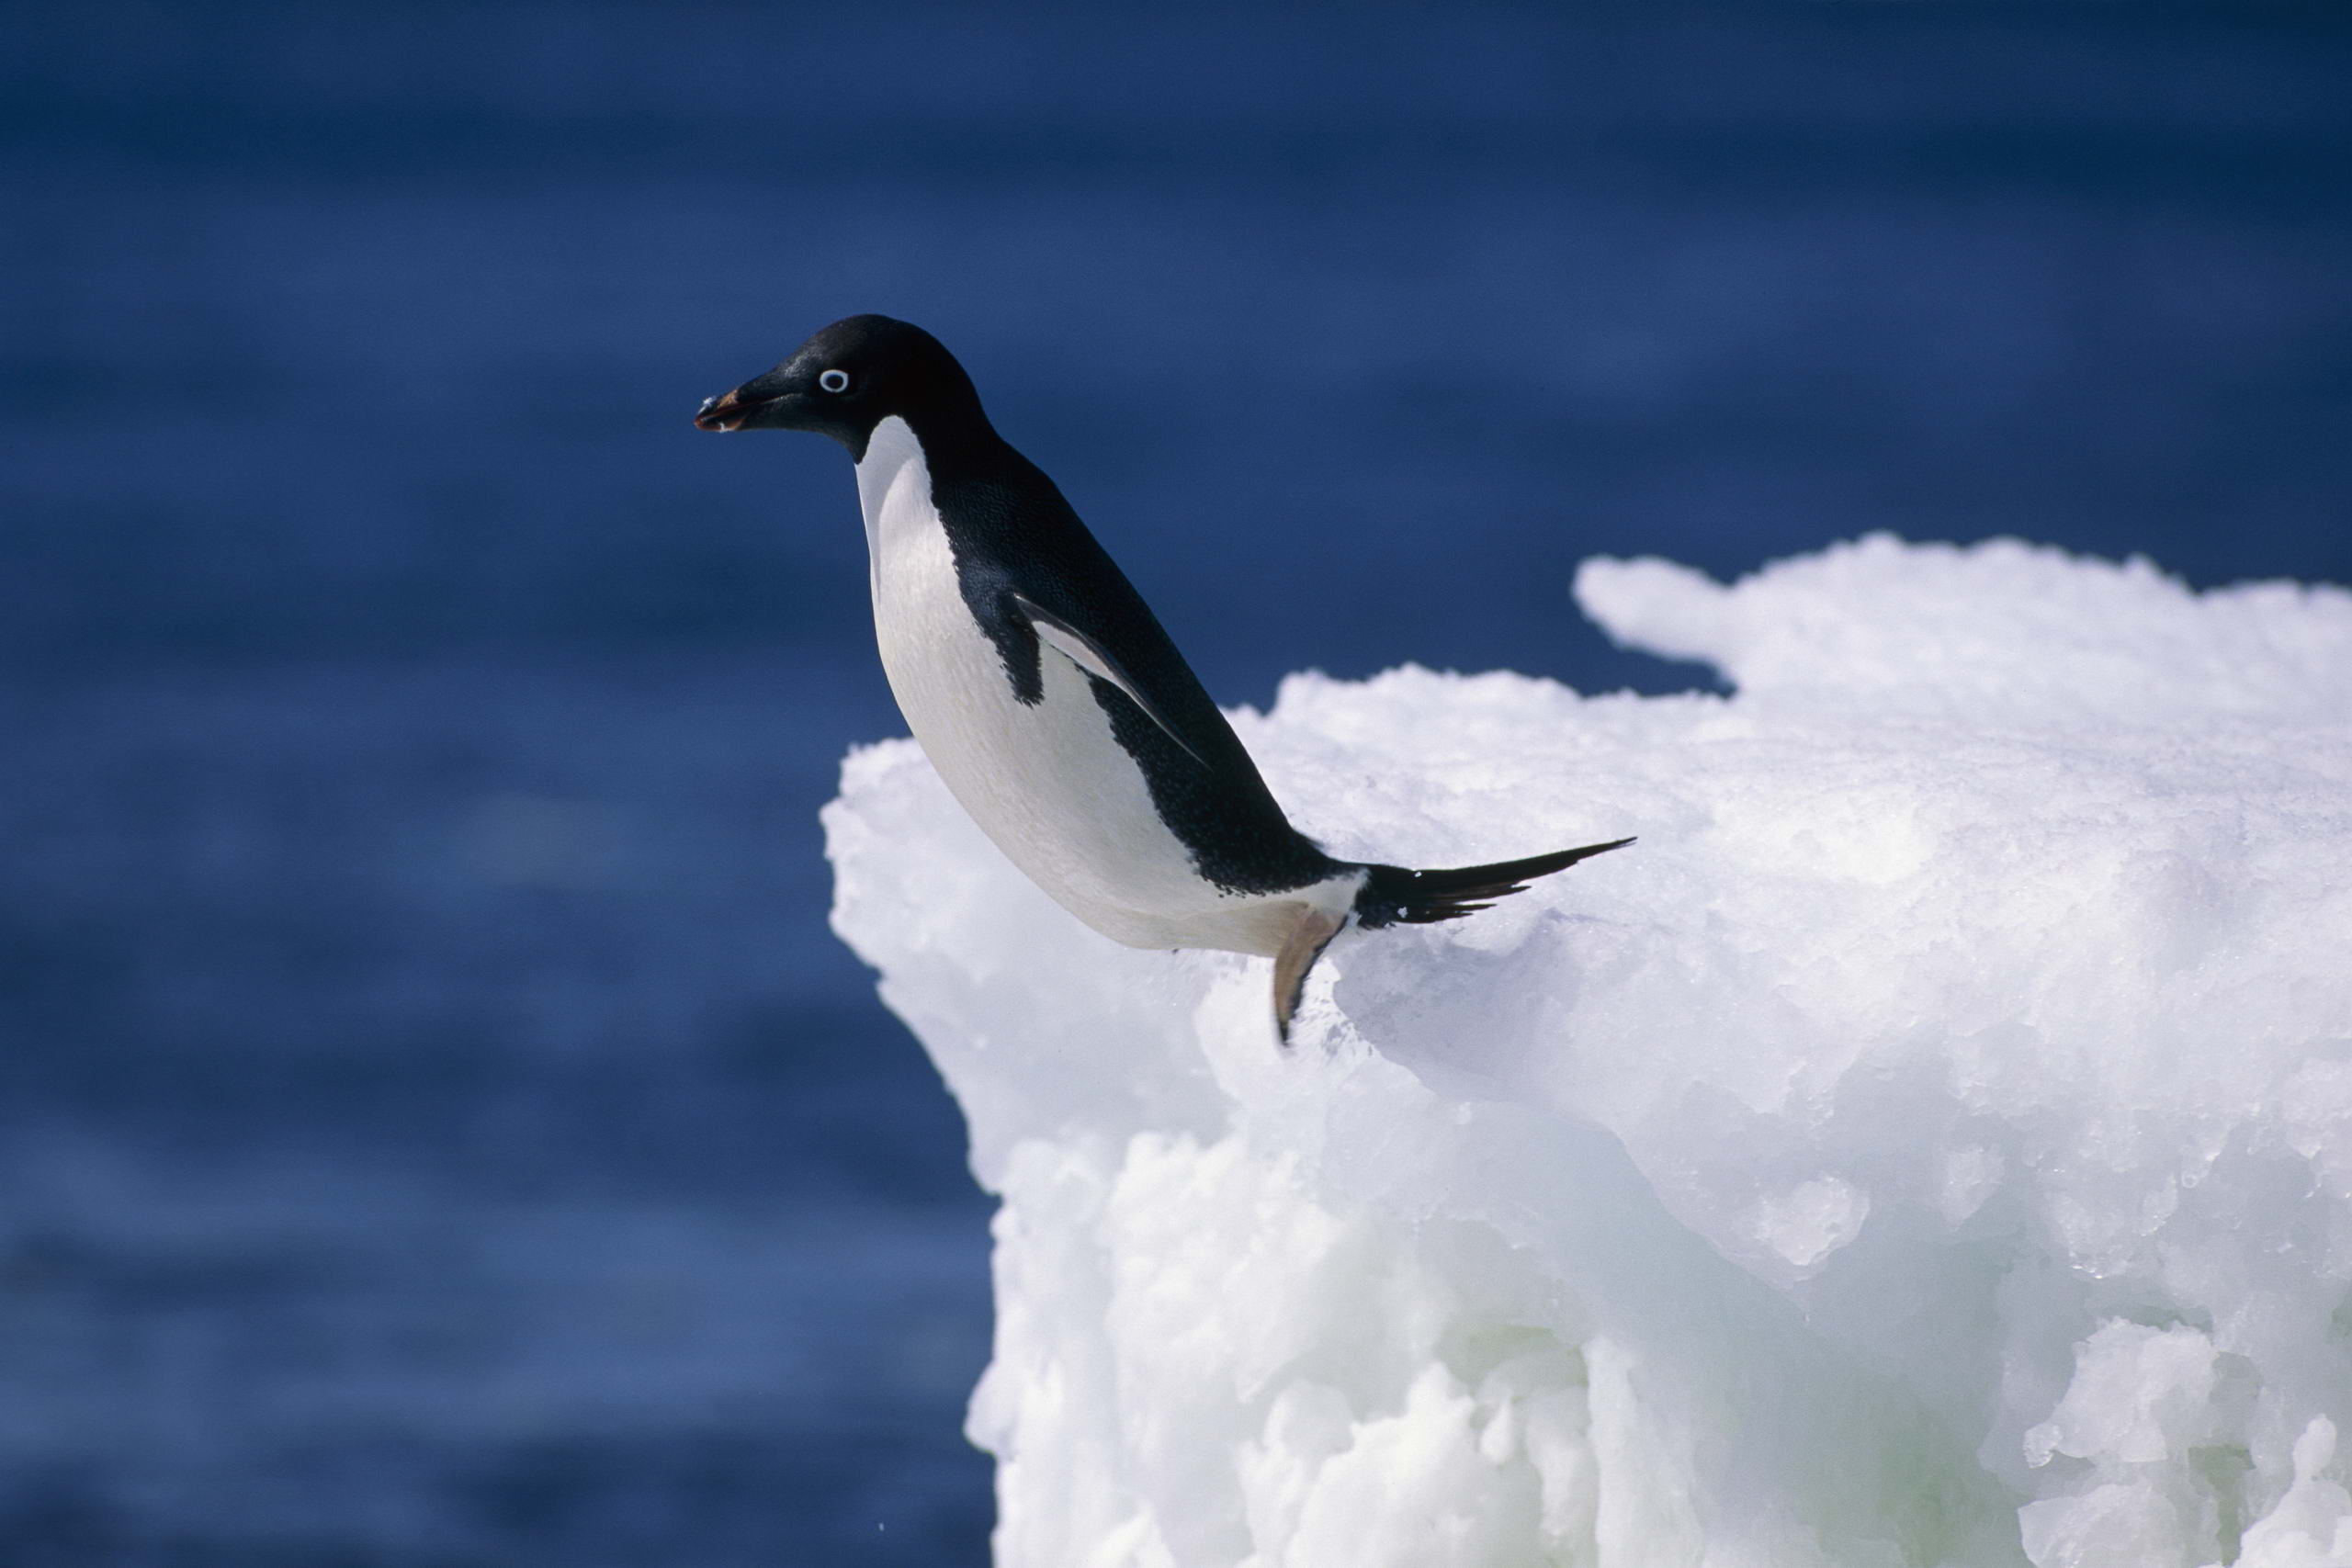 Tổng hợp các hình ảnh về chim cánh cụt dễ thương – Đặc điểm của loài chim cánh cụt - [Kích thước hình ảnh: 2560x1707 px]